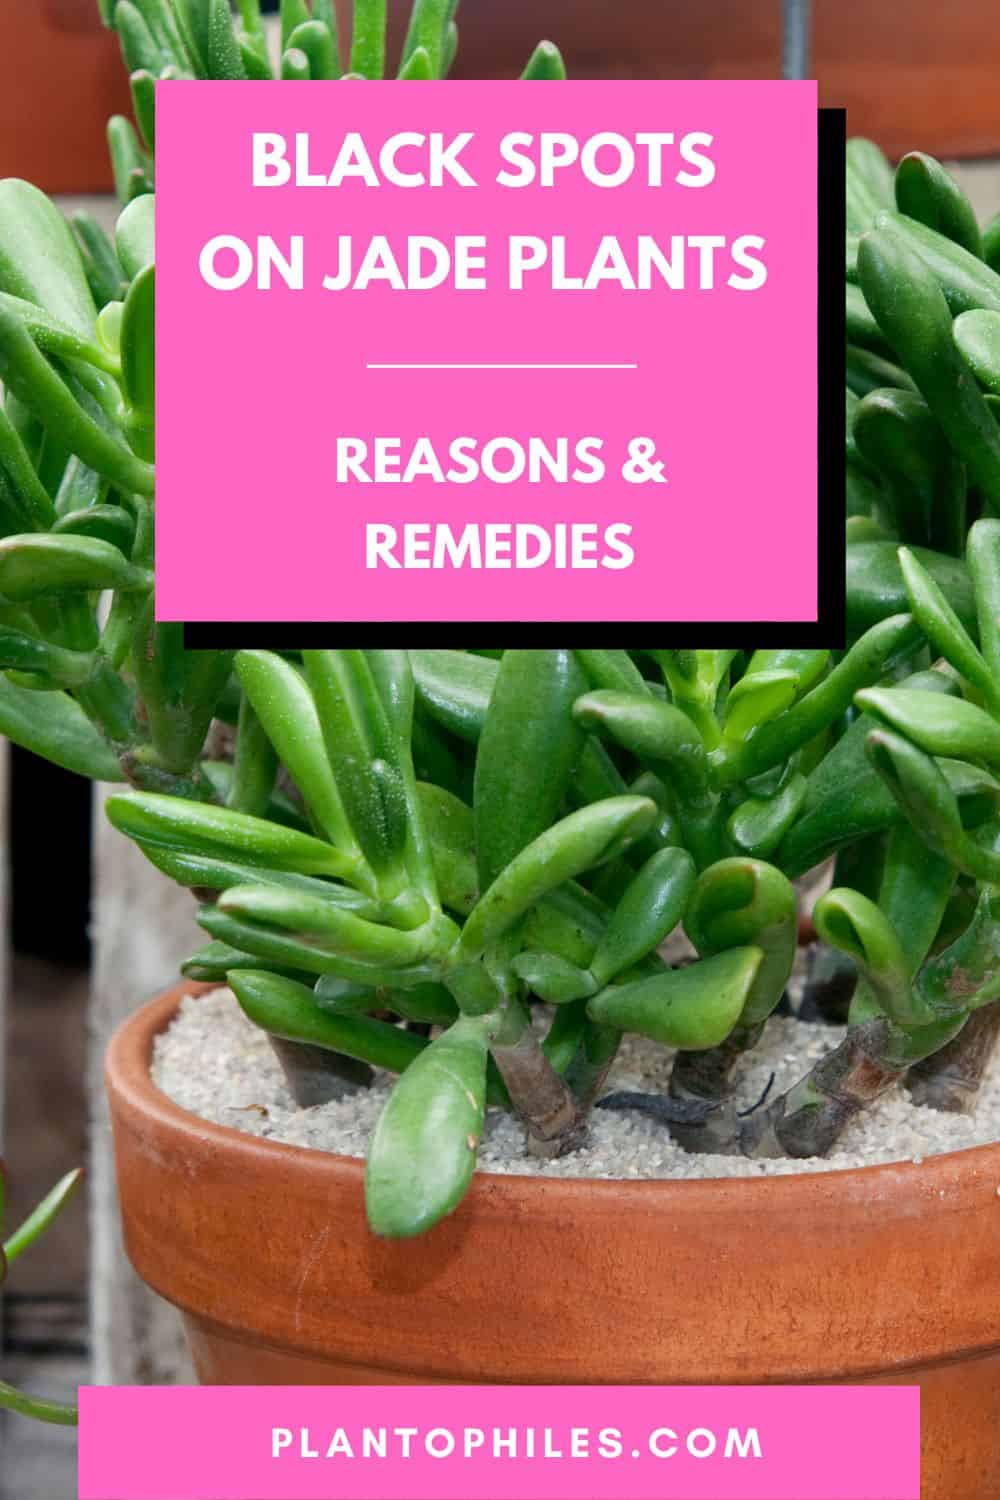 Black Spots on Jade Plants